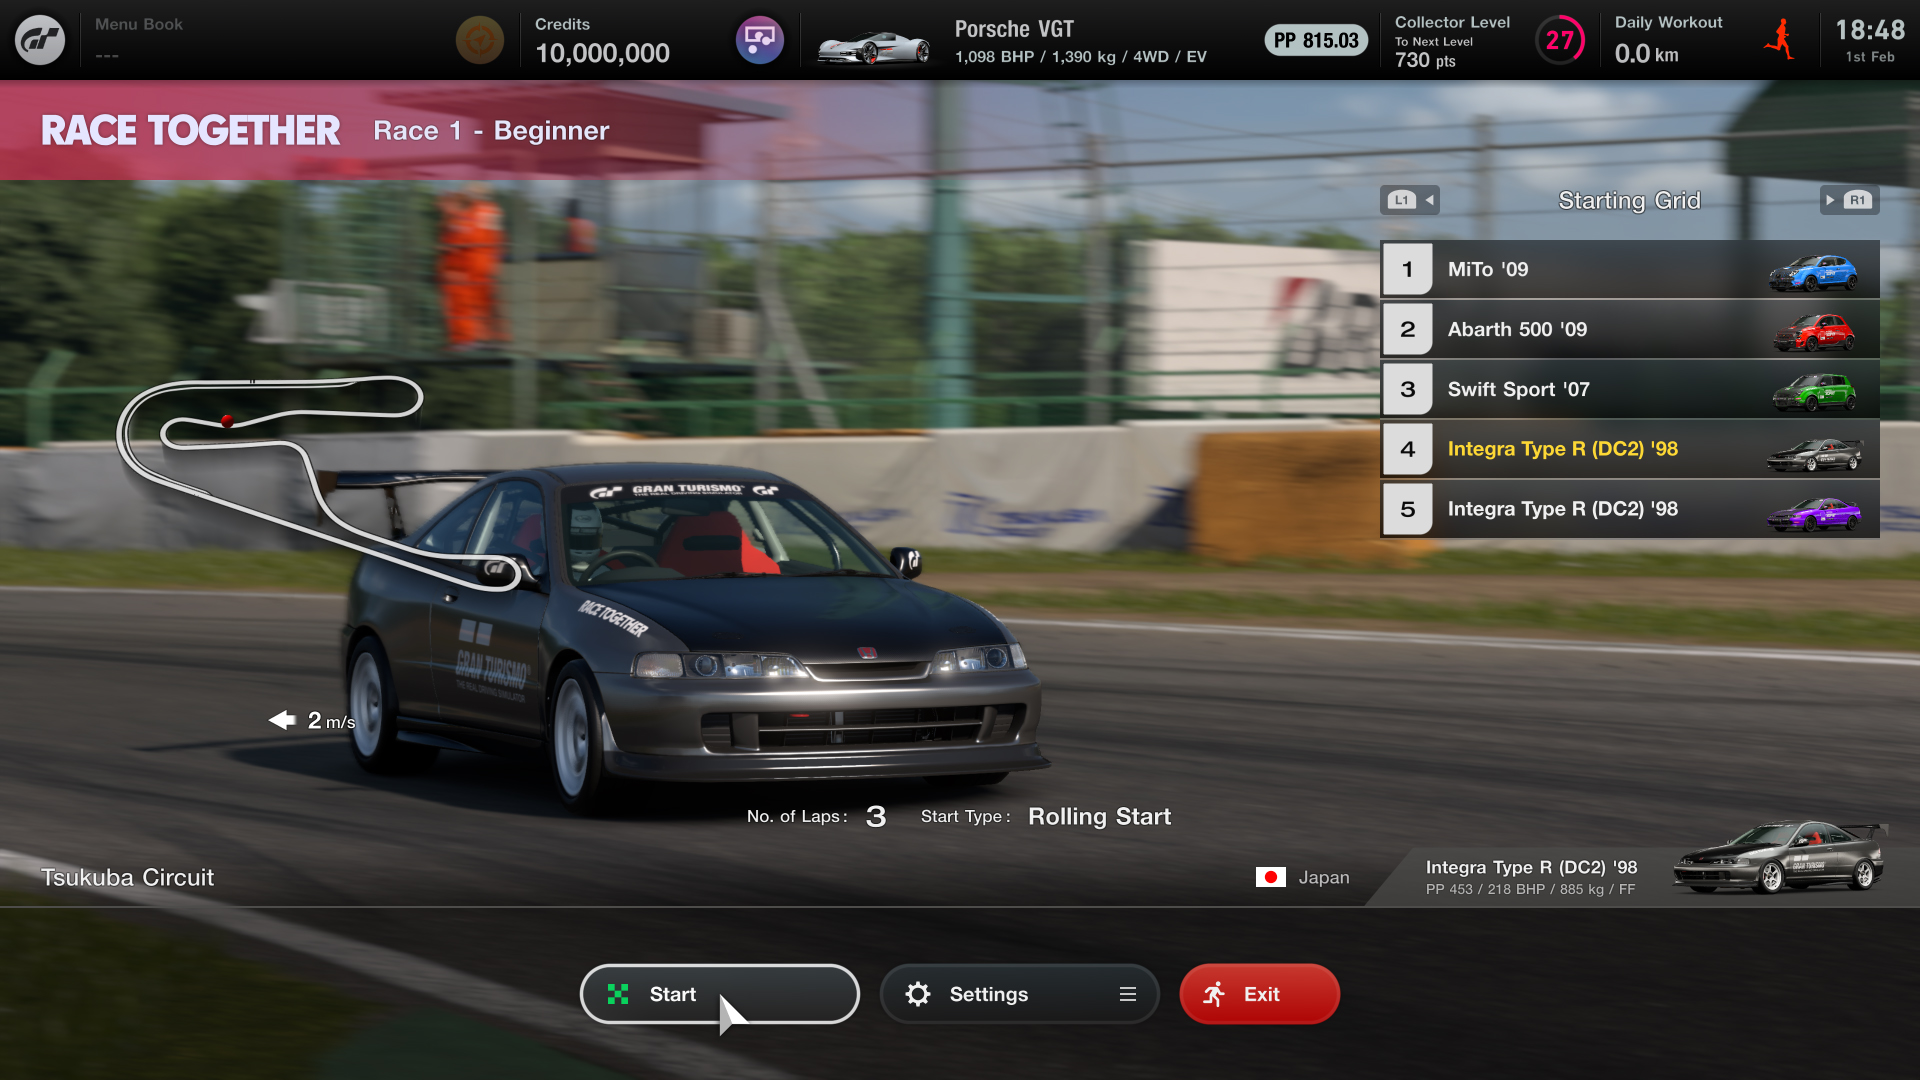 Sony heeft een verbeterde Sophy 2.0 AI-racer uitgebracht voor Gran Turismo 7